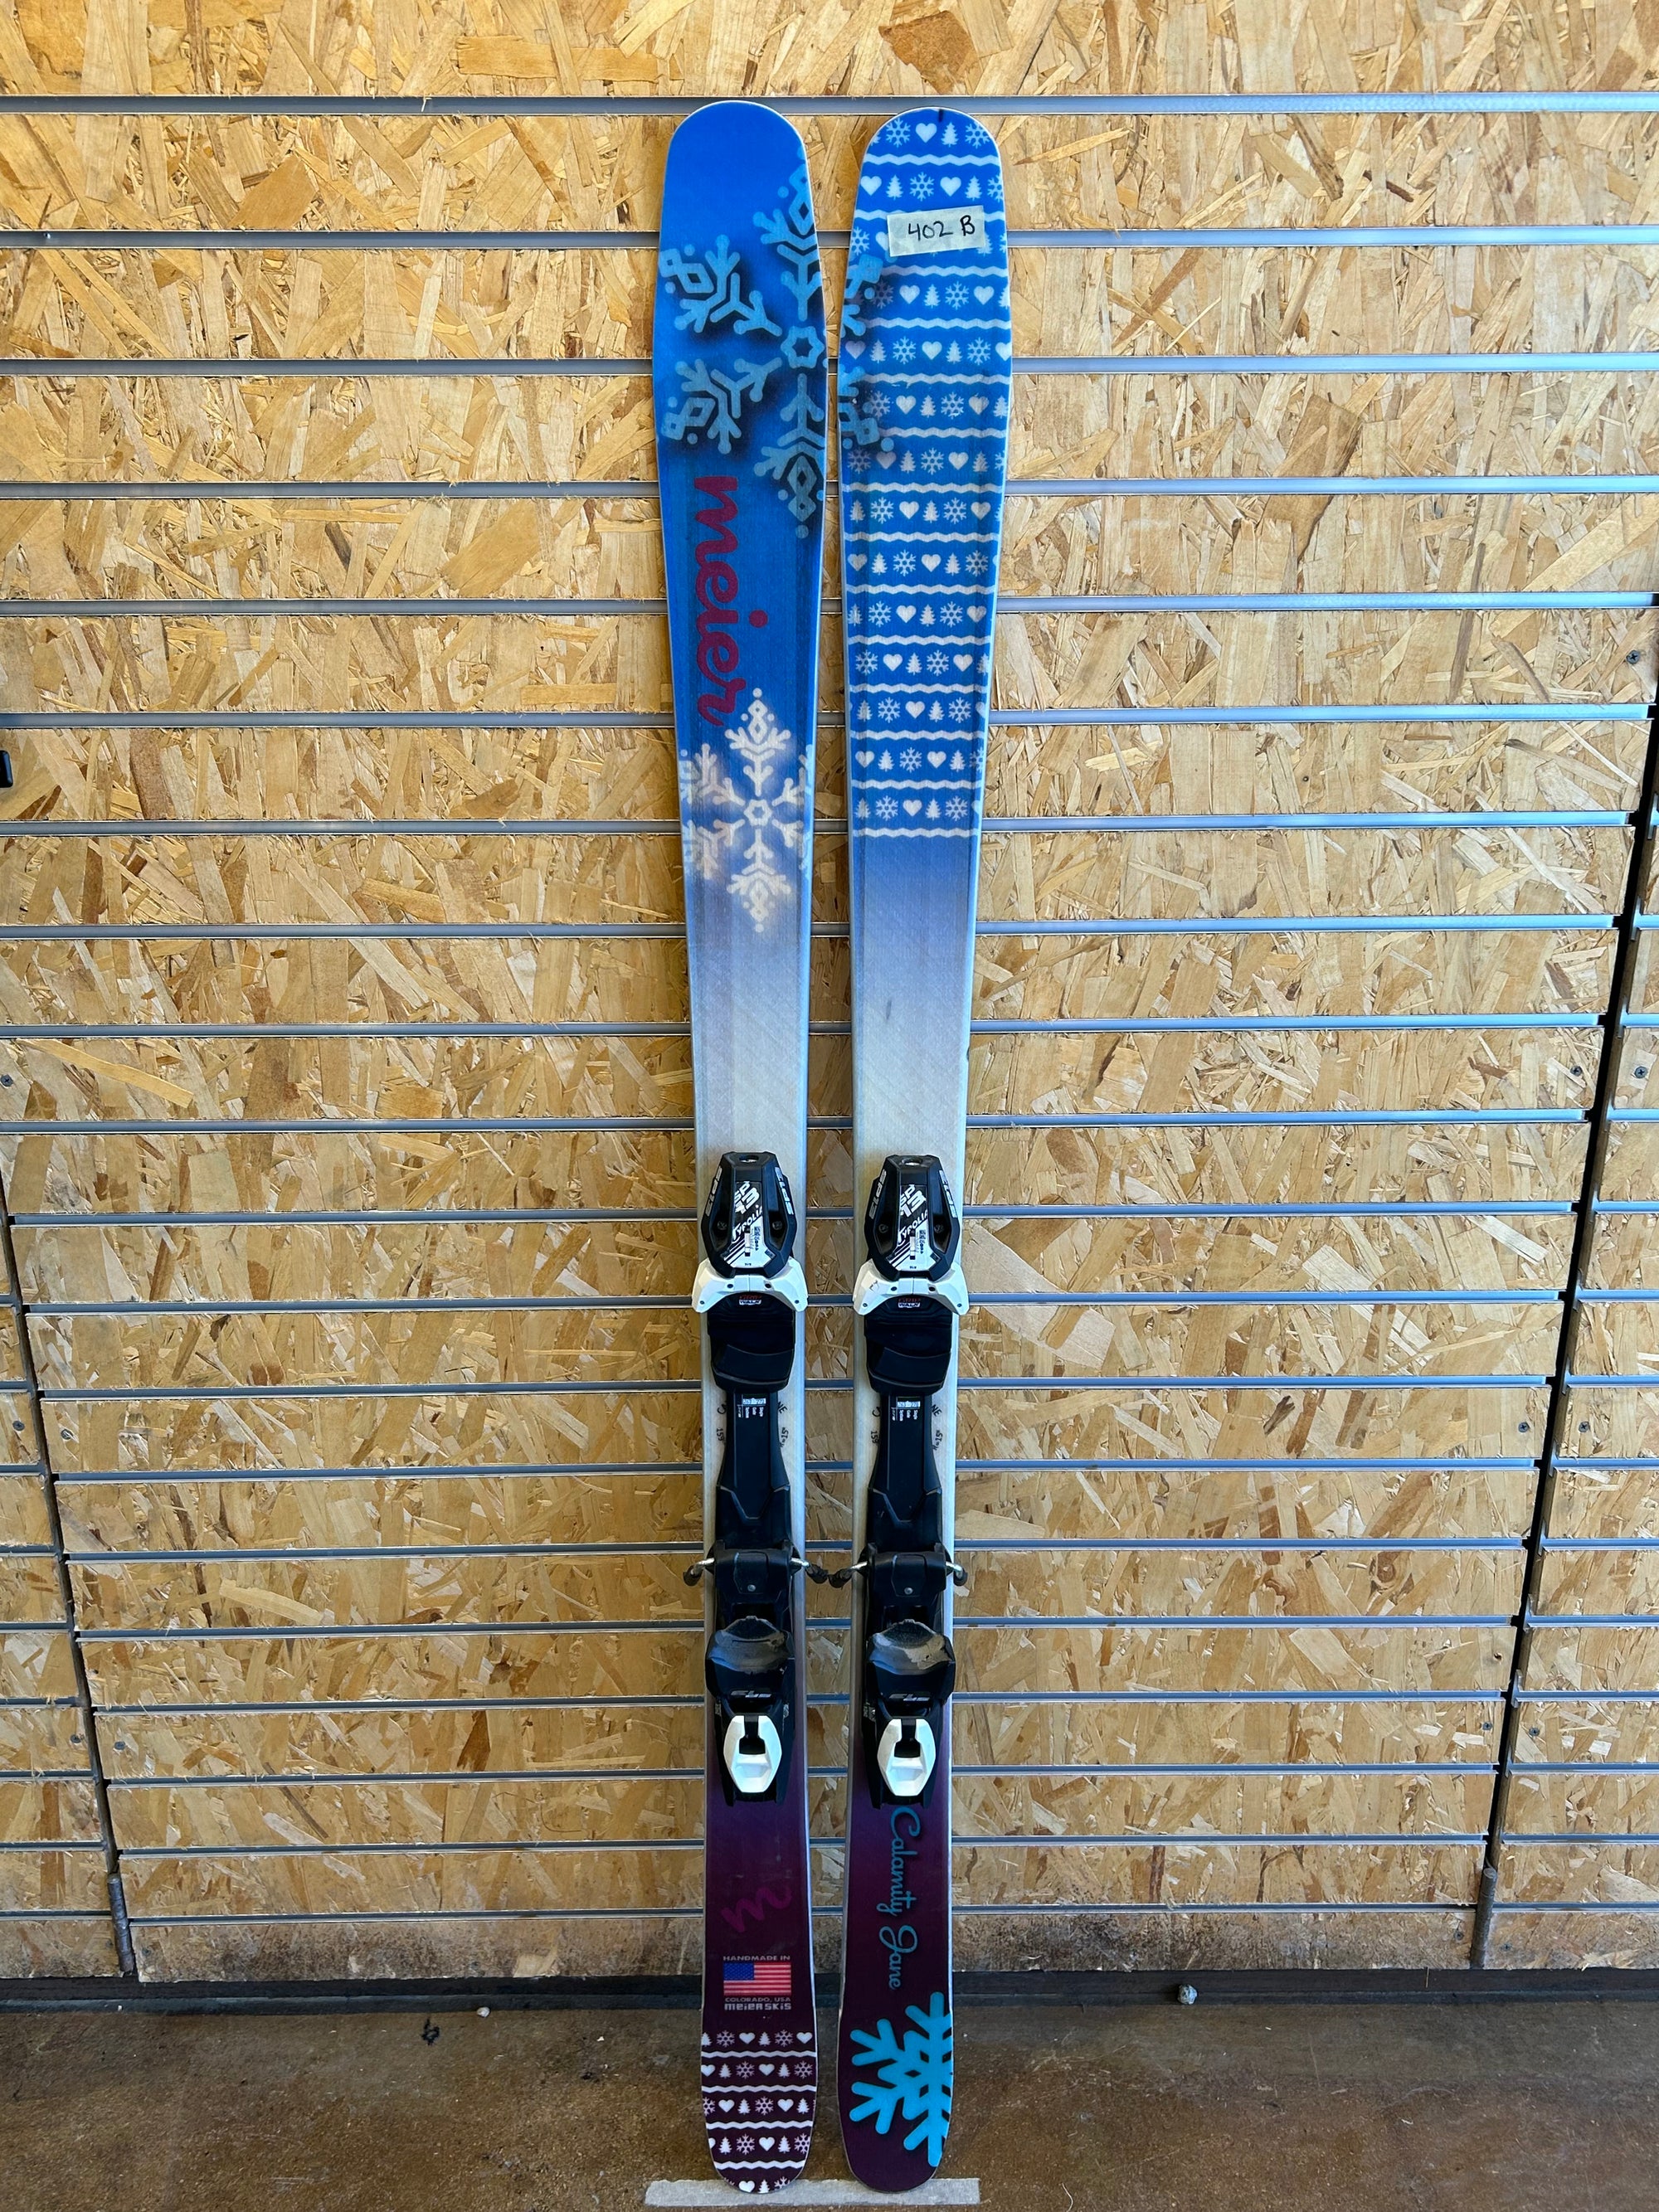 Calamity Jane 159cm Demo Ski